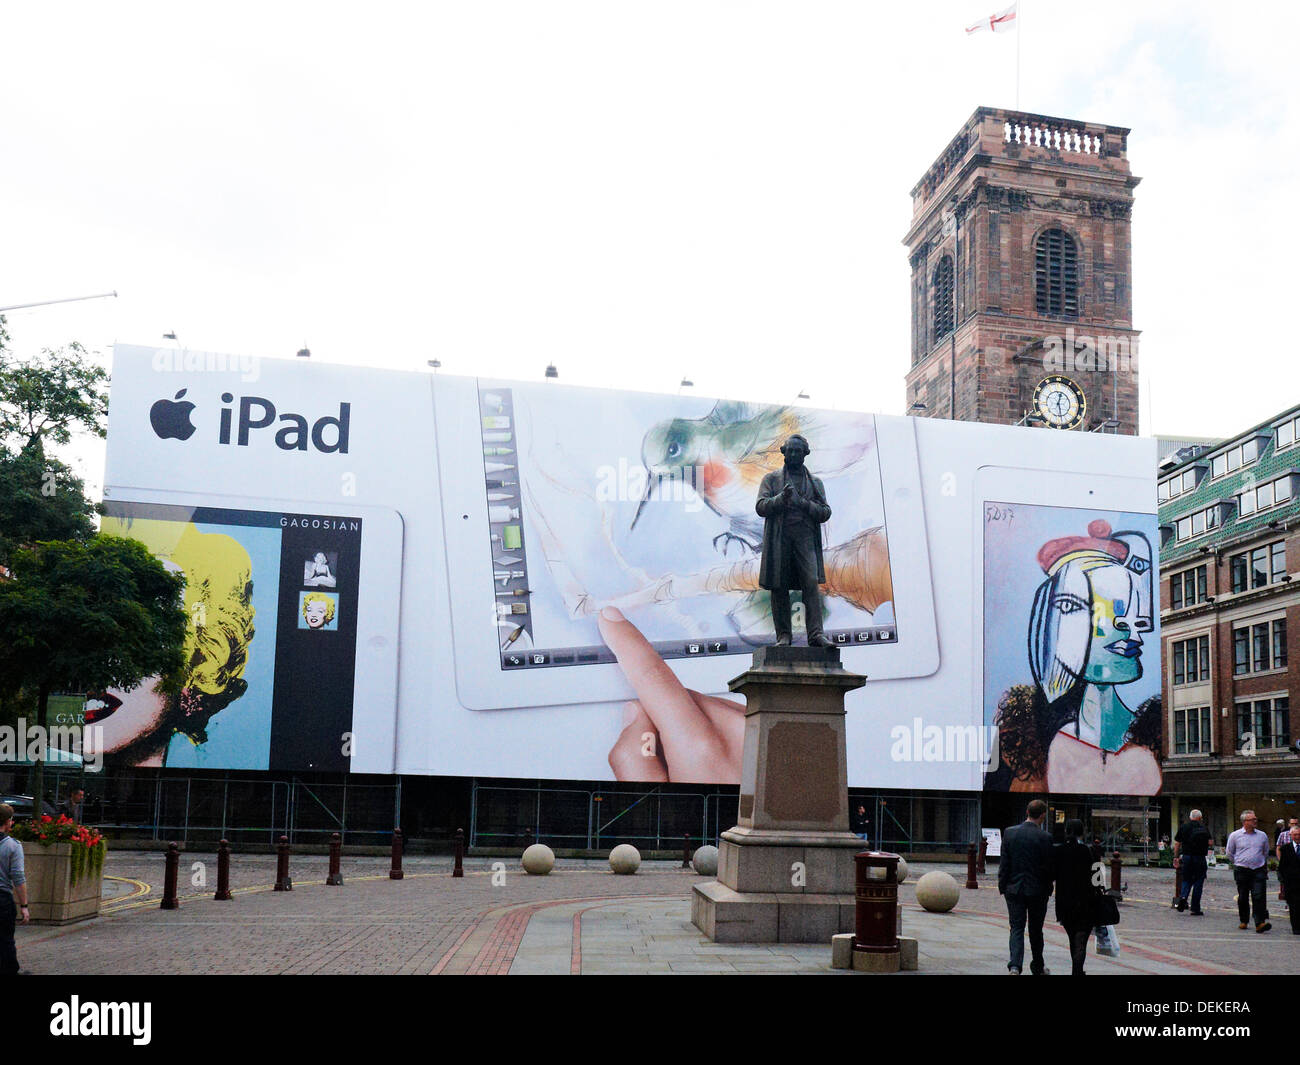 St Ann's Chiesa con iPad banner pubblicitario in Manchester REGNO UNITO Foto Stock